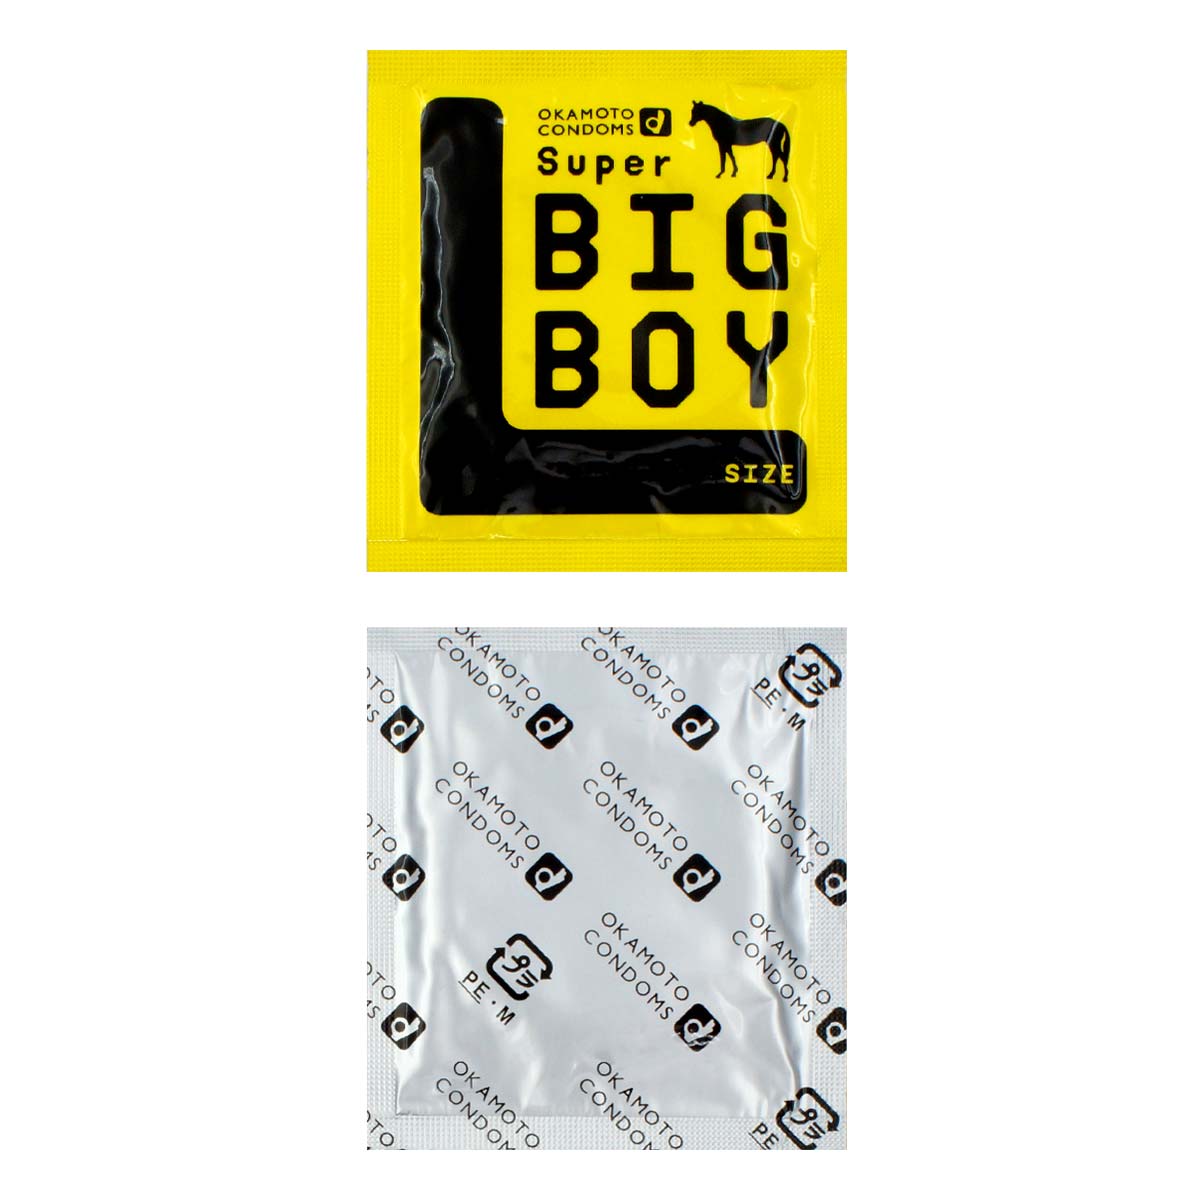 Super Big Boy 58mm (日本版) 2 片装 乳胶安全套-p_2